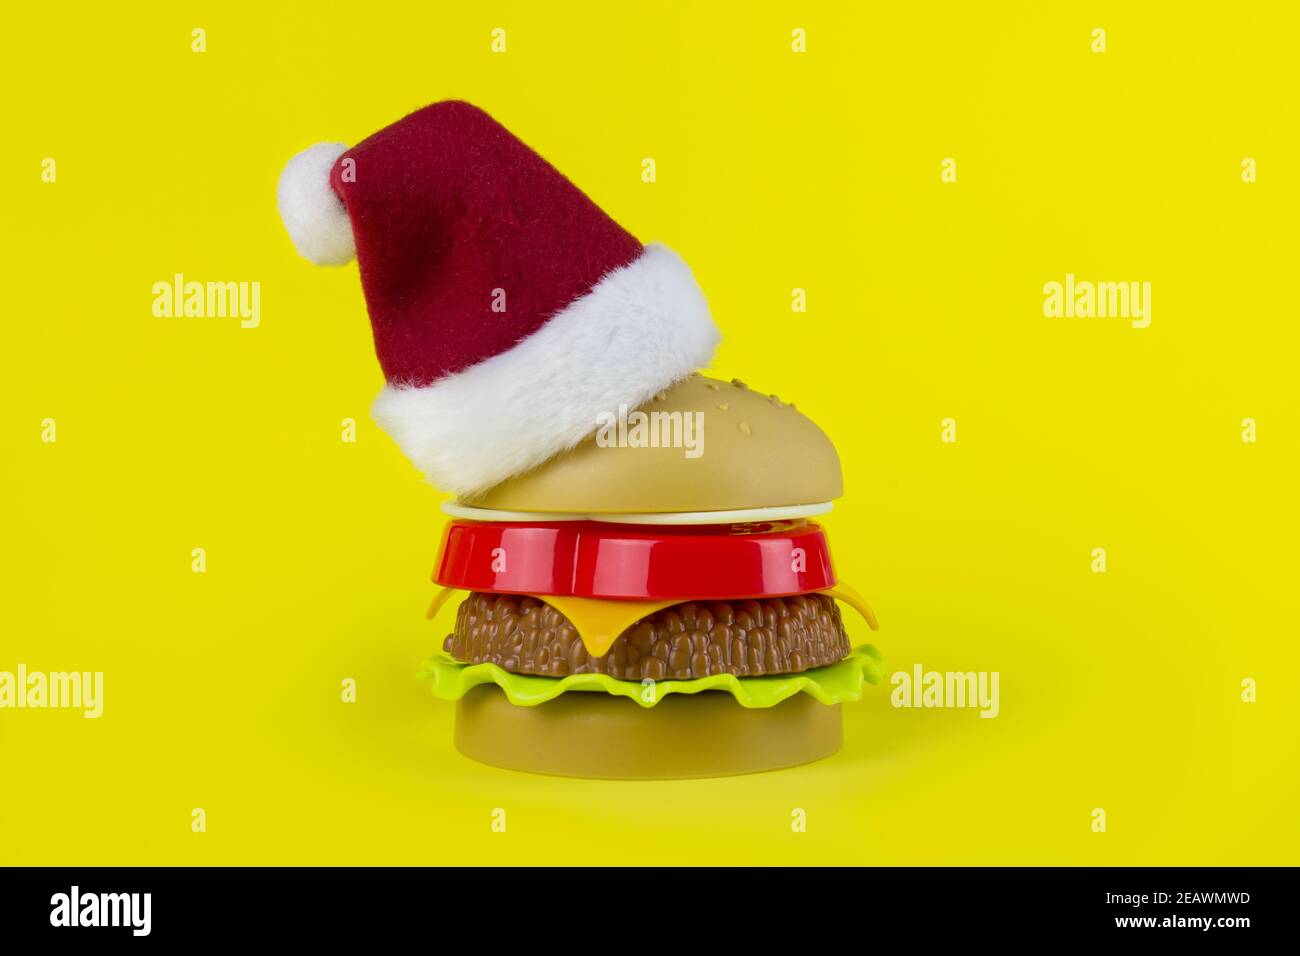 Chapeau de père Noël avec hamburger sur fond jaune. Restauration rapide Christmass. Hamburger enveloppé de cadeau. Concept de nourriture artificielle nocive Banque D'Images